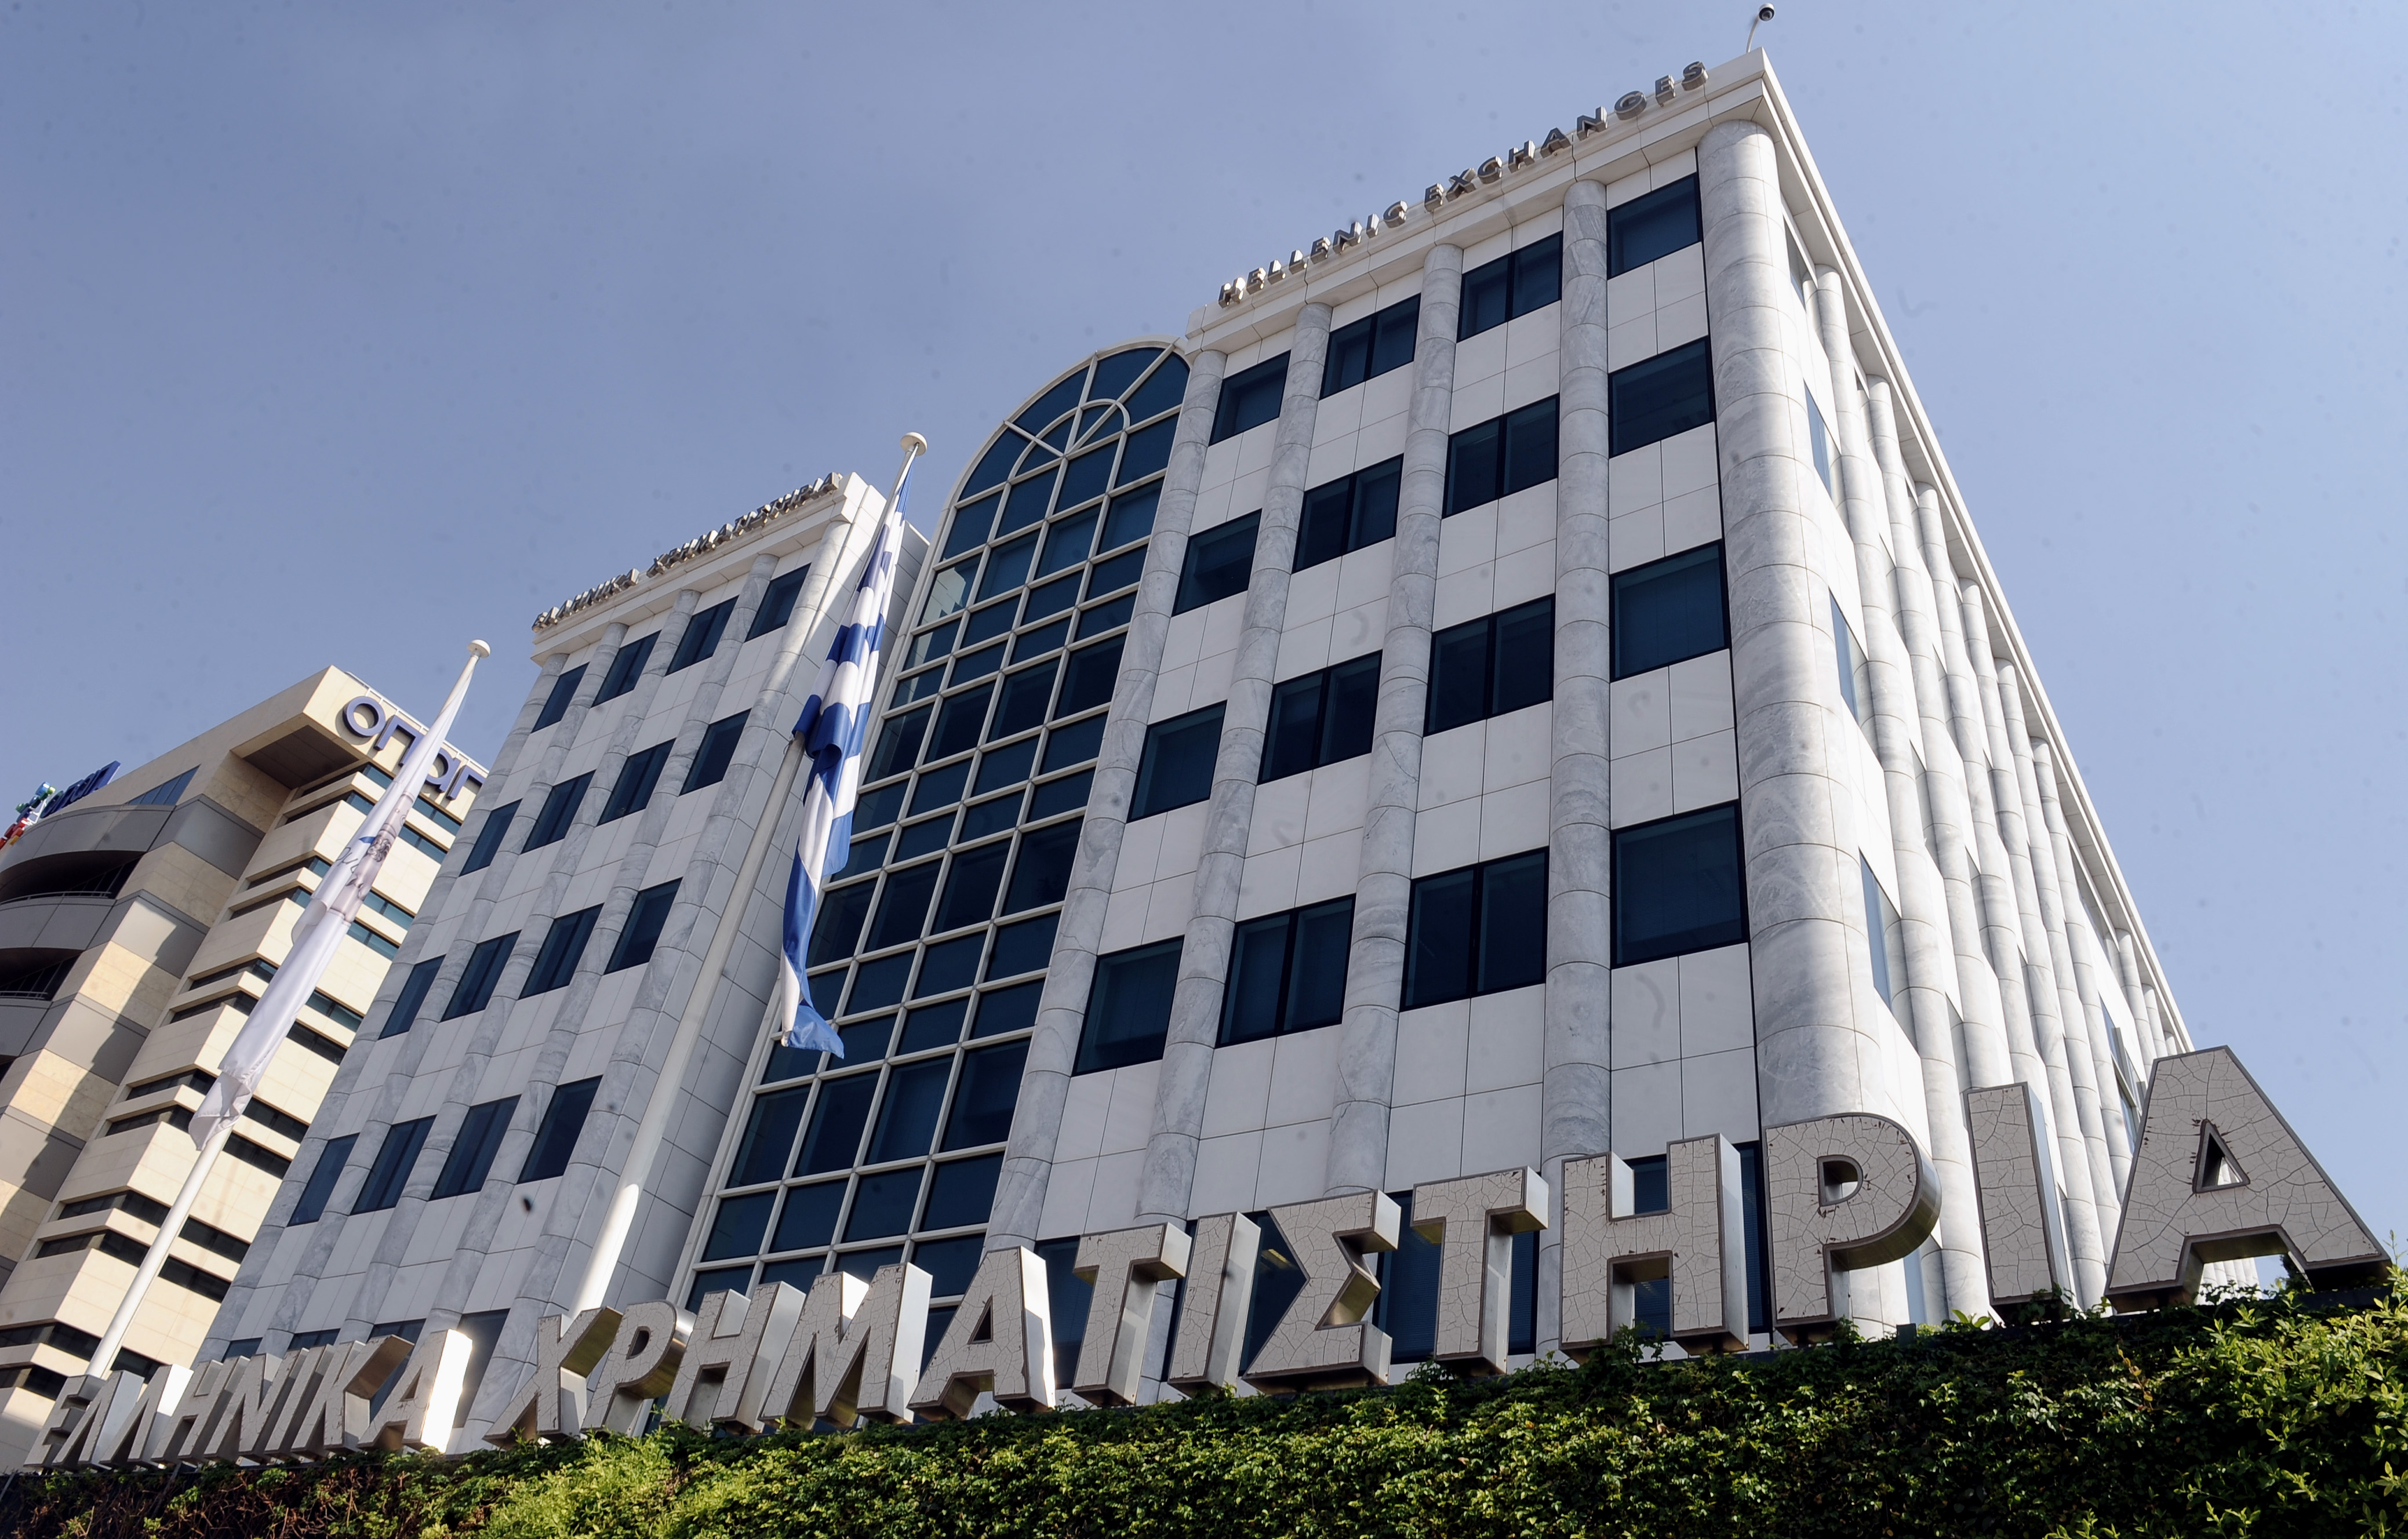 Με οριακή πτώση 0,14% έκλεισε το Χρηματιστήριο Αθηνών την Τετάρτη